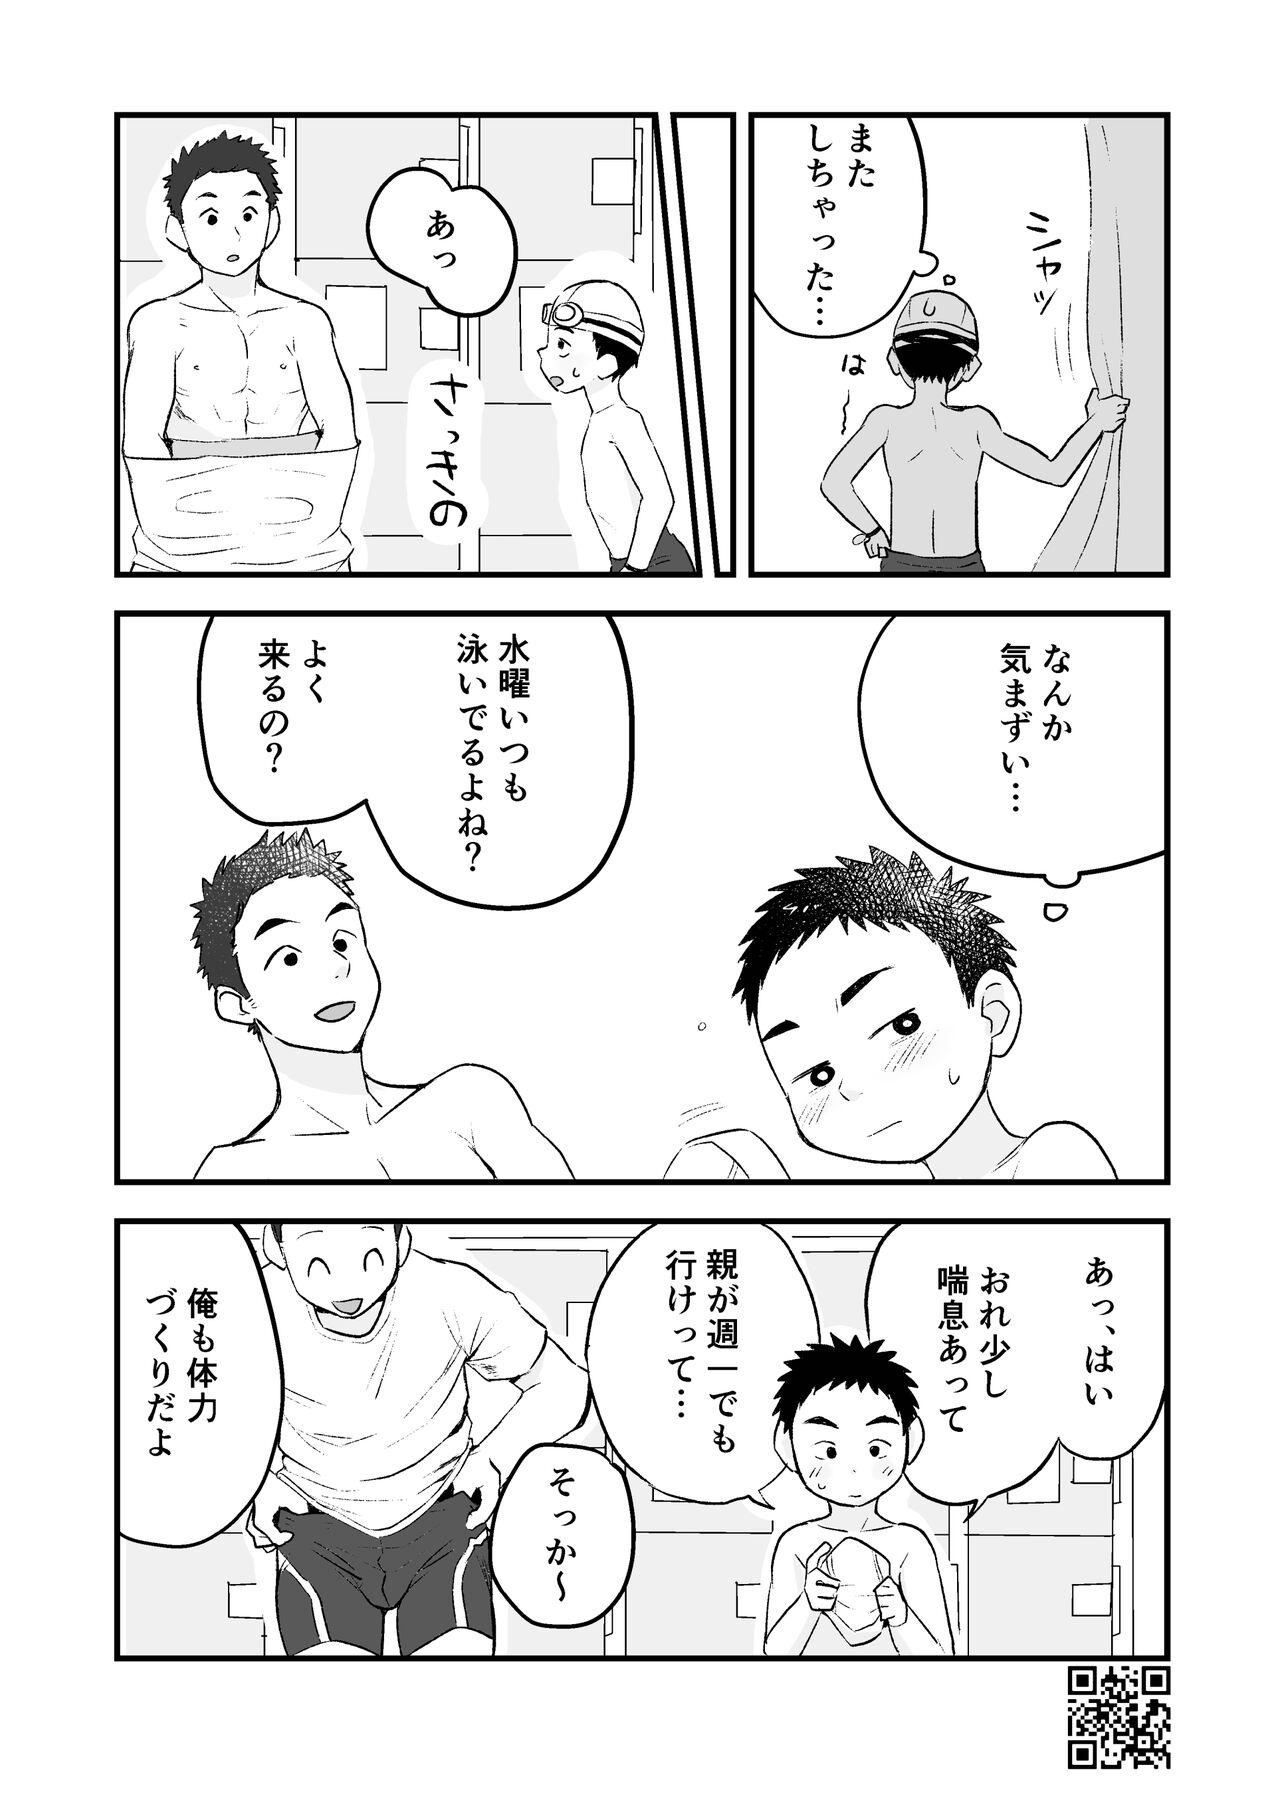 Thick Himitsu no Suiyoubi Matome - Original Boob - Page 11